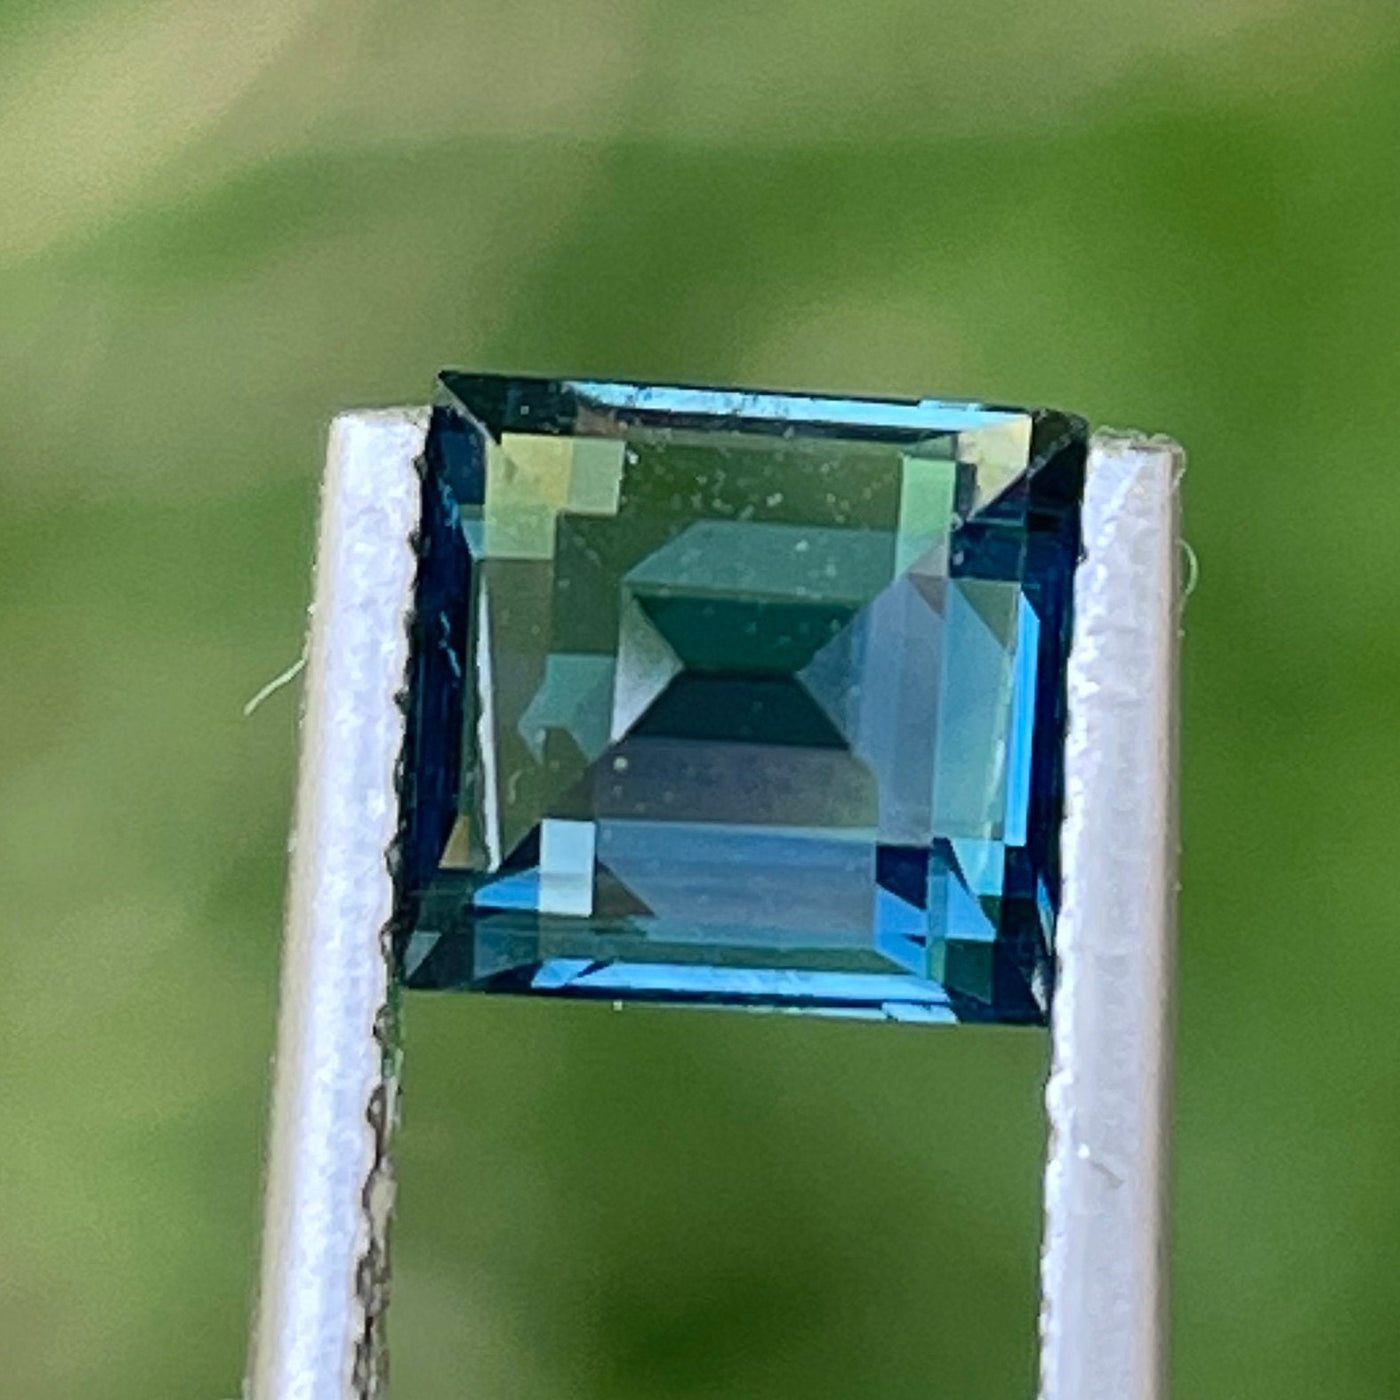 Teal Sapphire l 2.06 Ct l 6.3x5.9x4.6mm l Princess l Heated l Madagascar l Natural Sapphire l Sapphire Ring l Engagement Ring